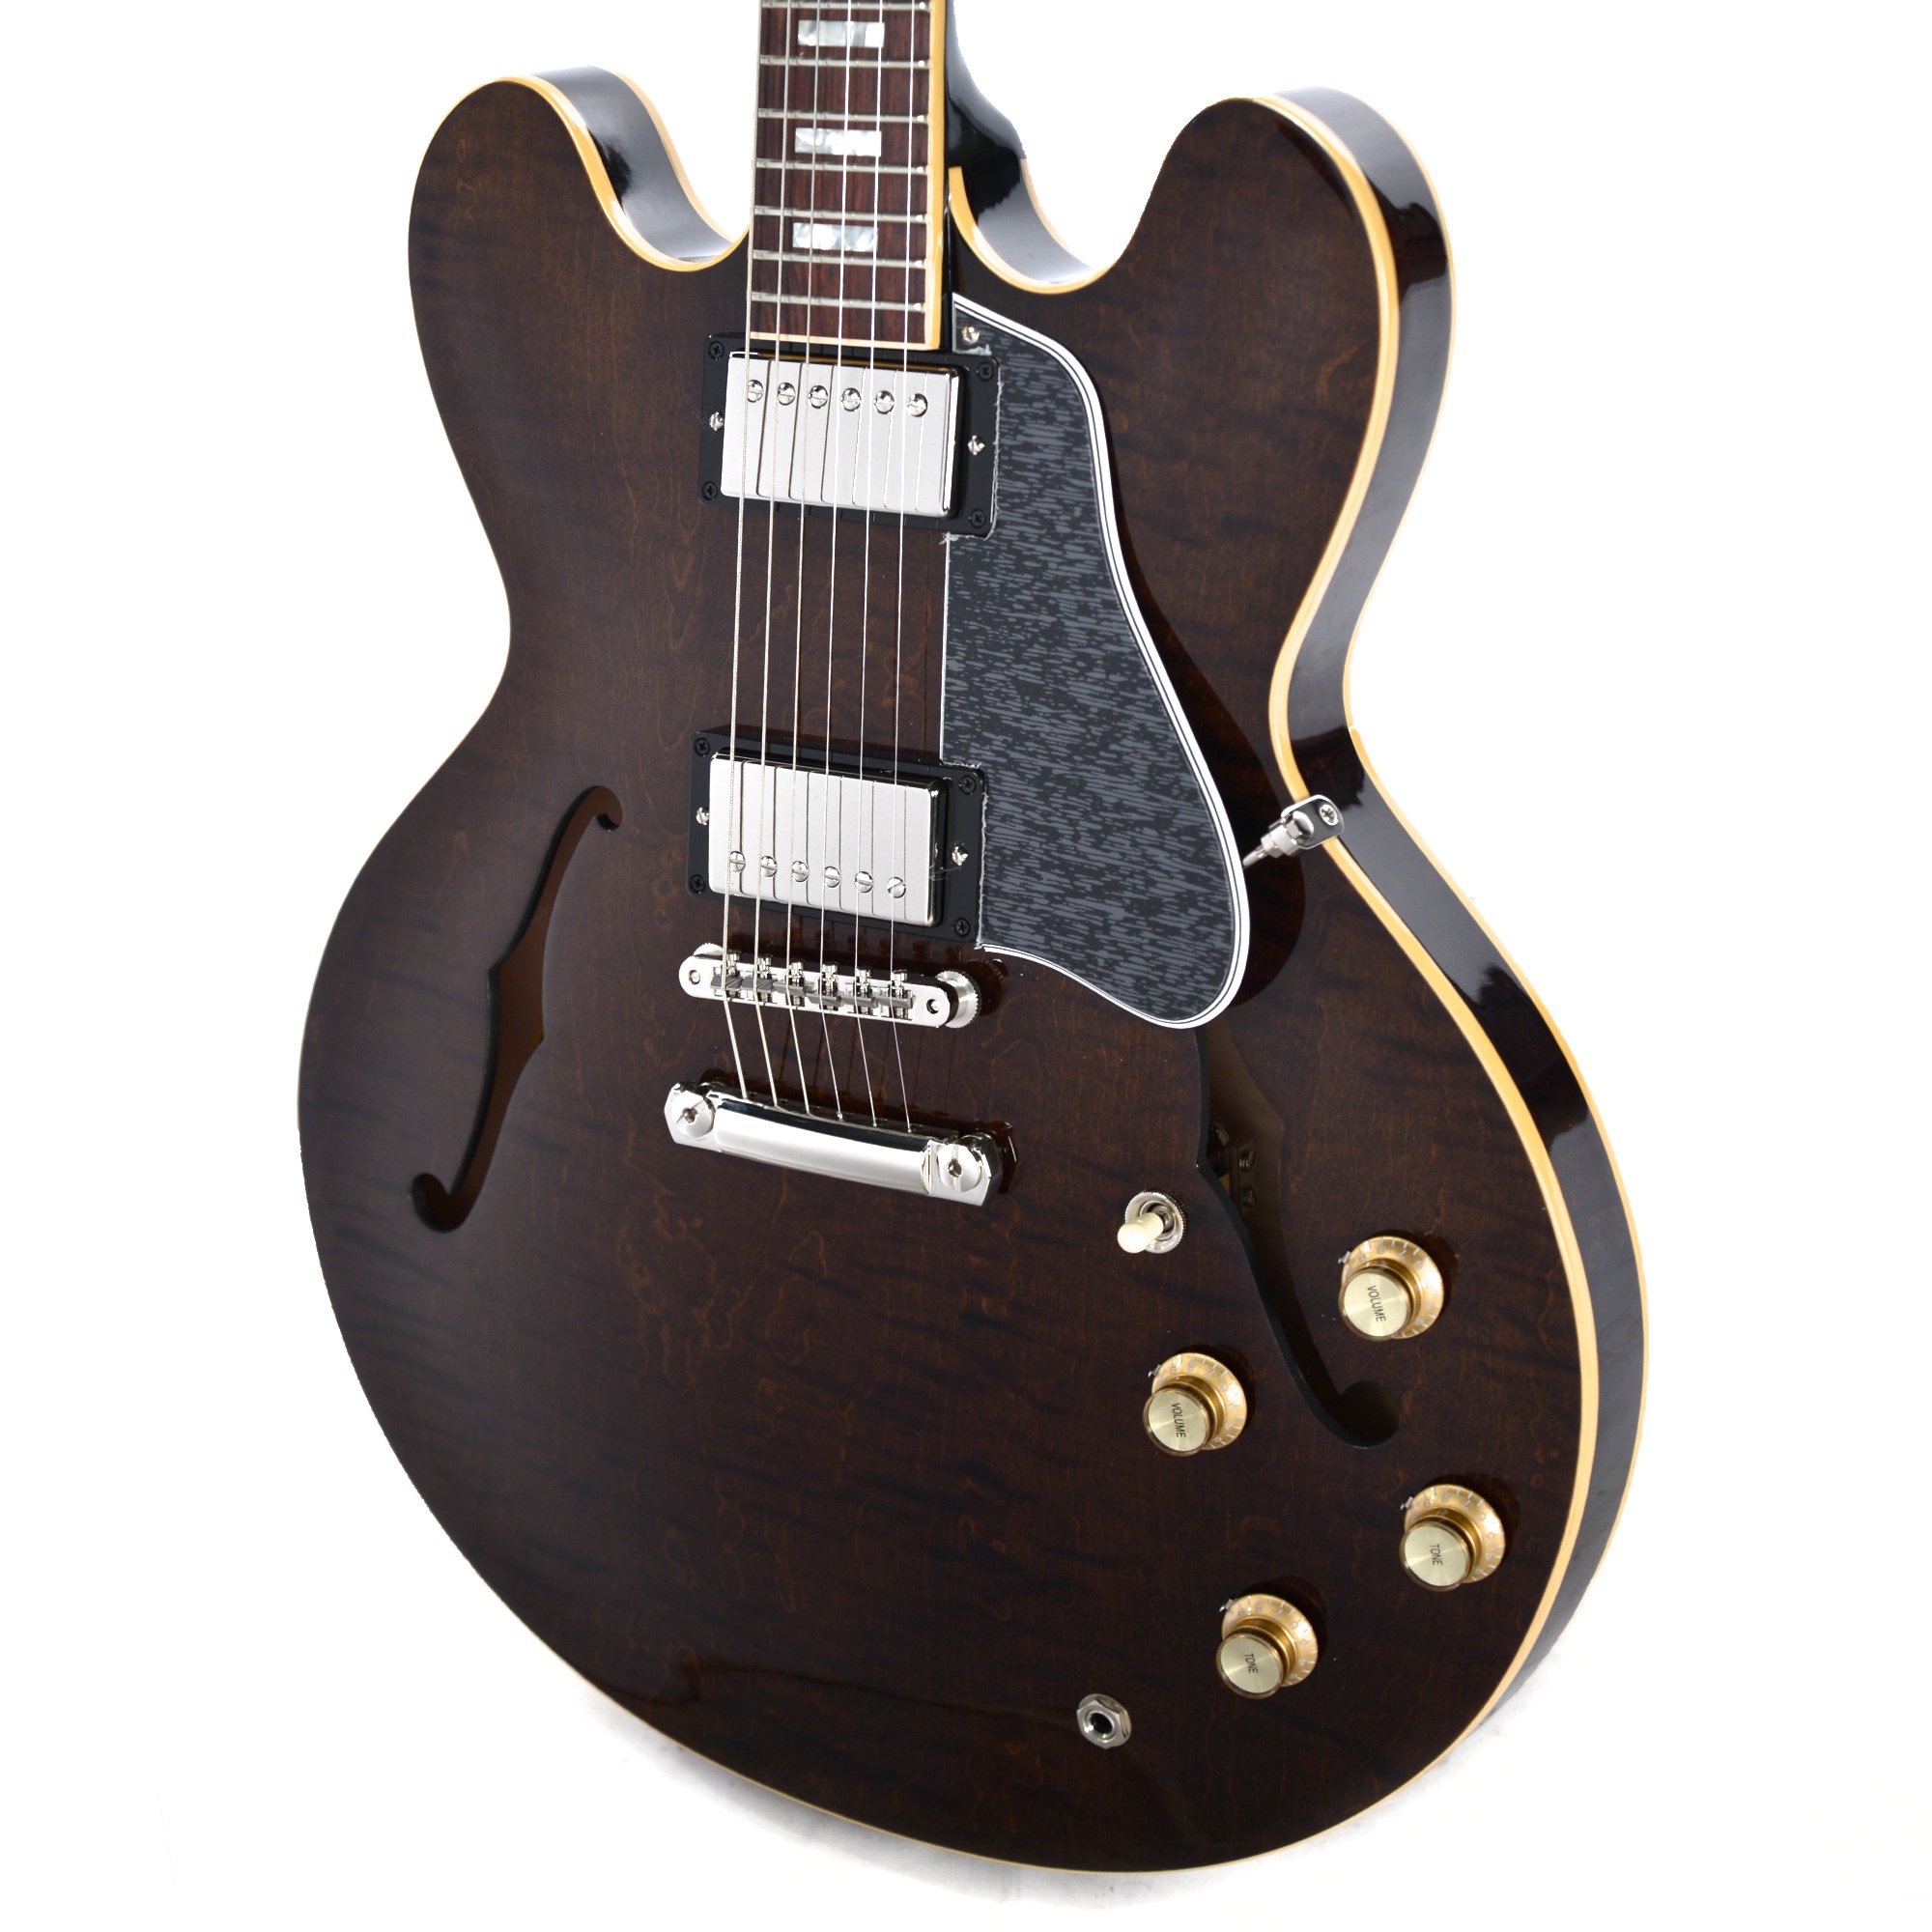 Gibson Es-335 Figured 2018 Ltd - Antique Walnut - Semi hollow elektriche gitaar - Variation 2